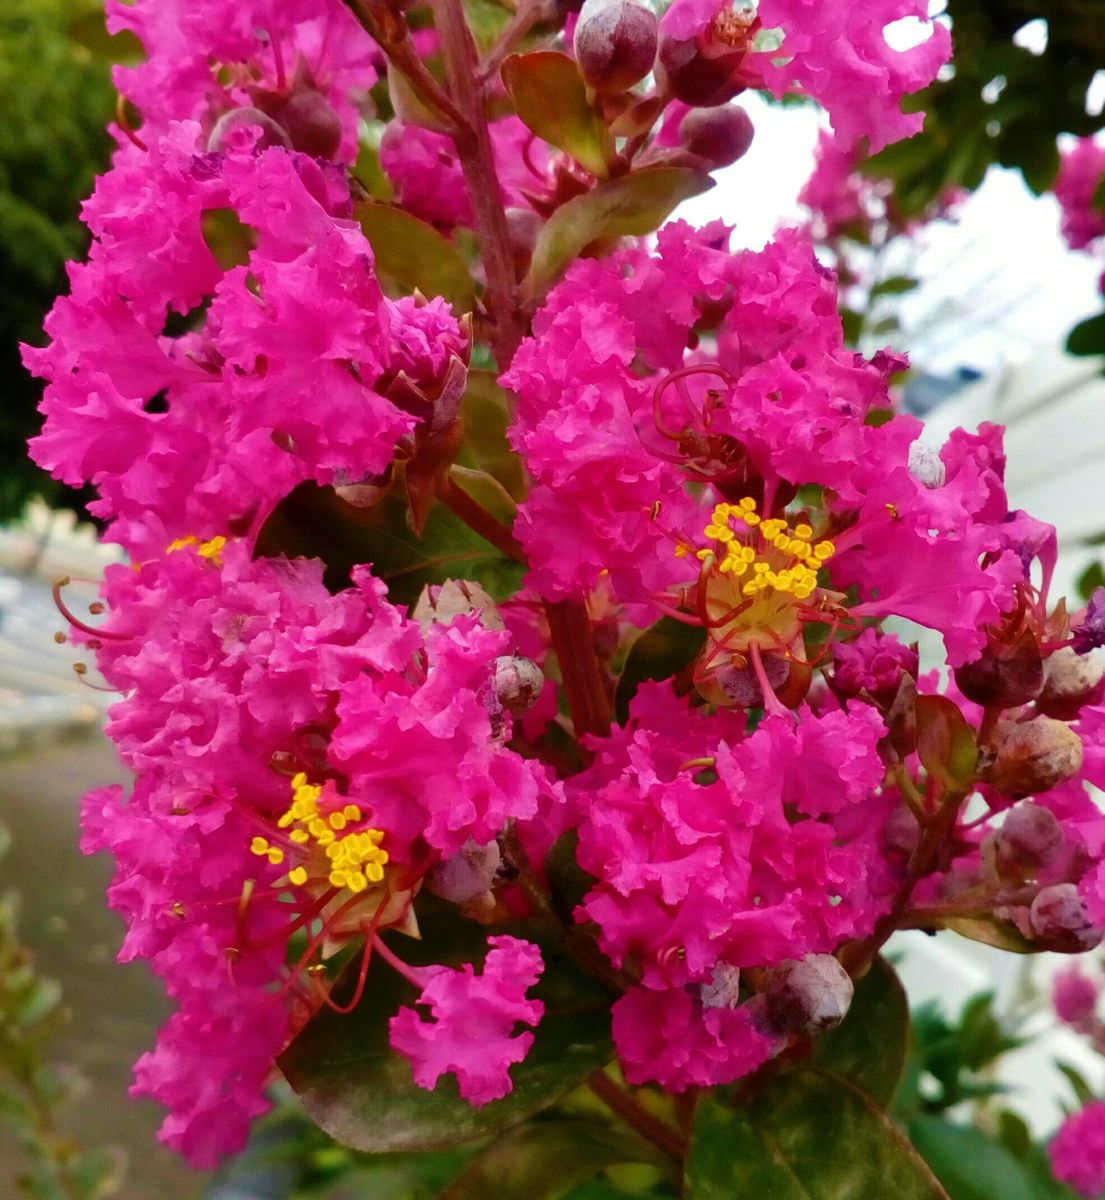 裏通りの道路沿いの角に咲いていた『サルスベリ』😊７月９日、雨上がりの朝に撮影  花